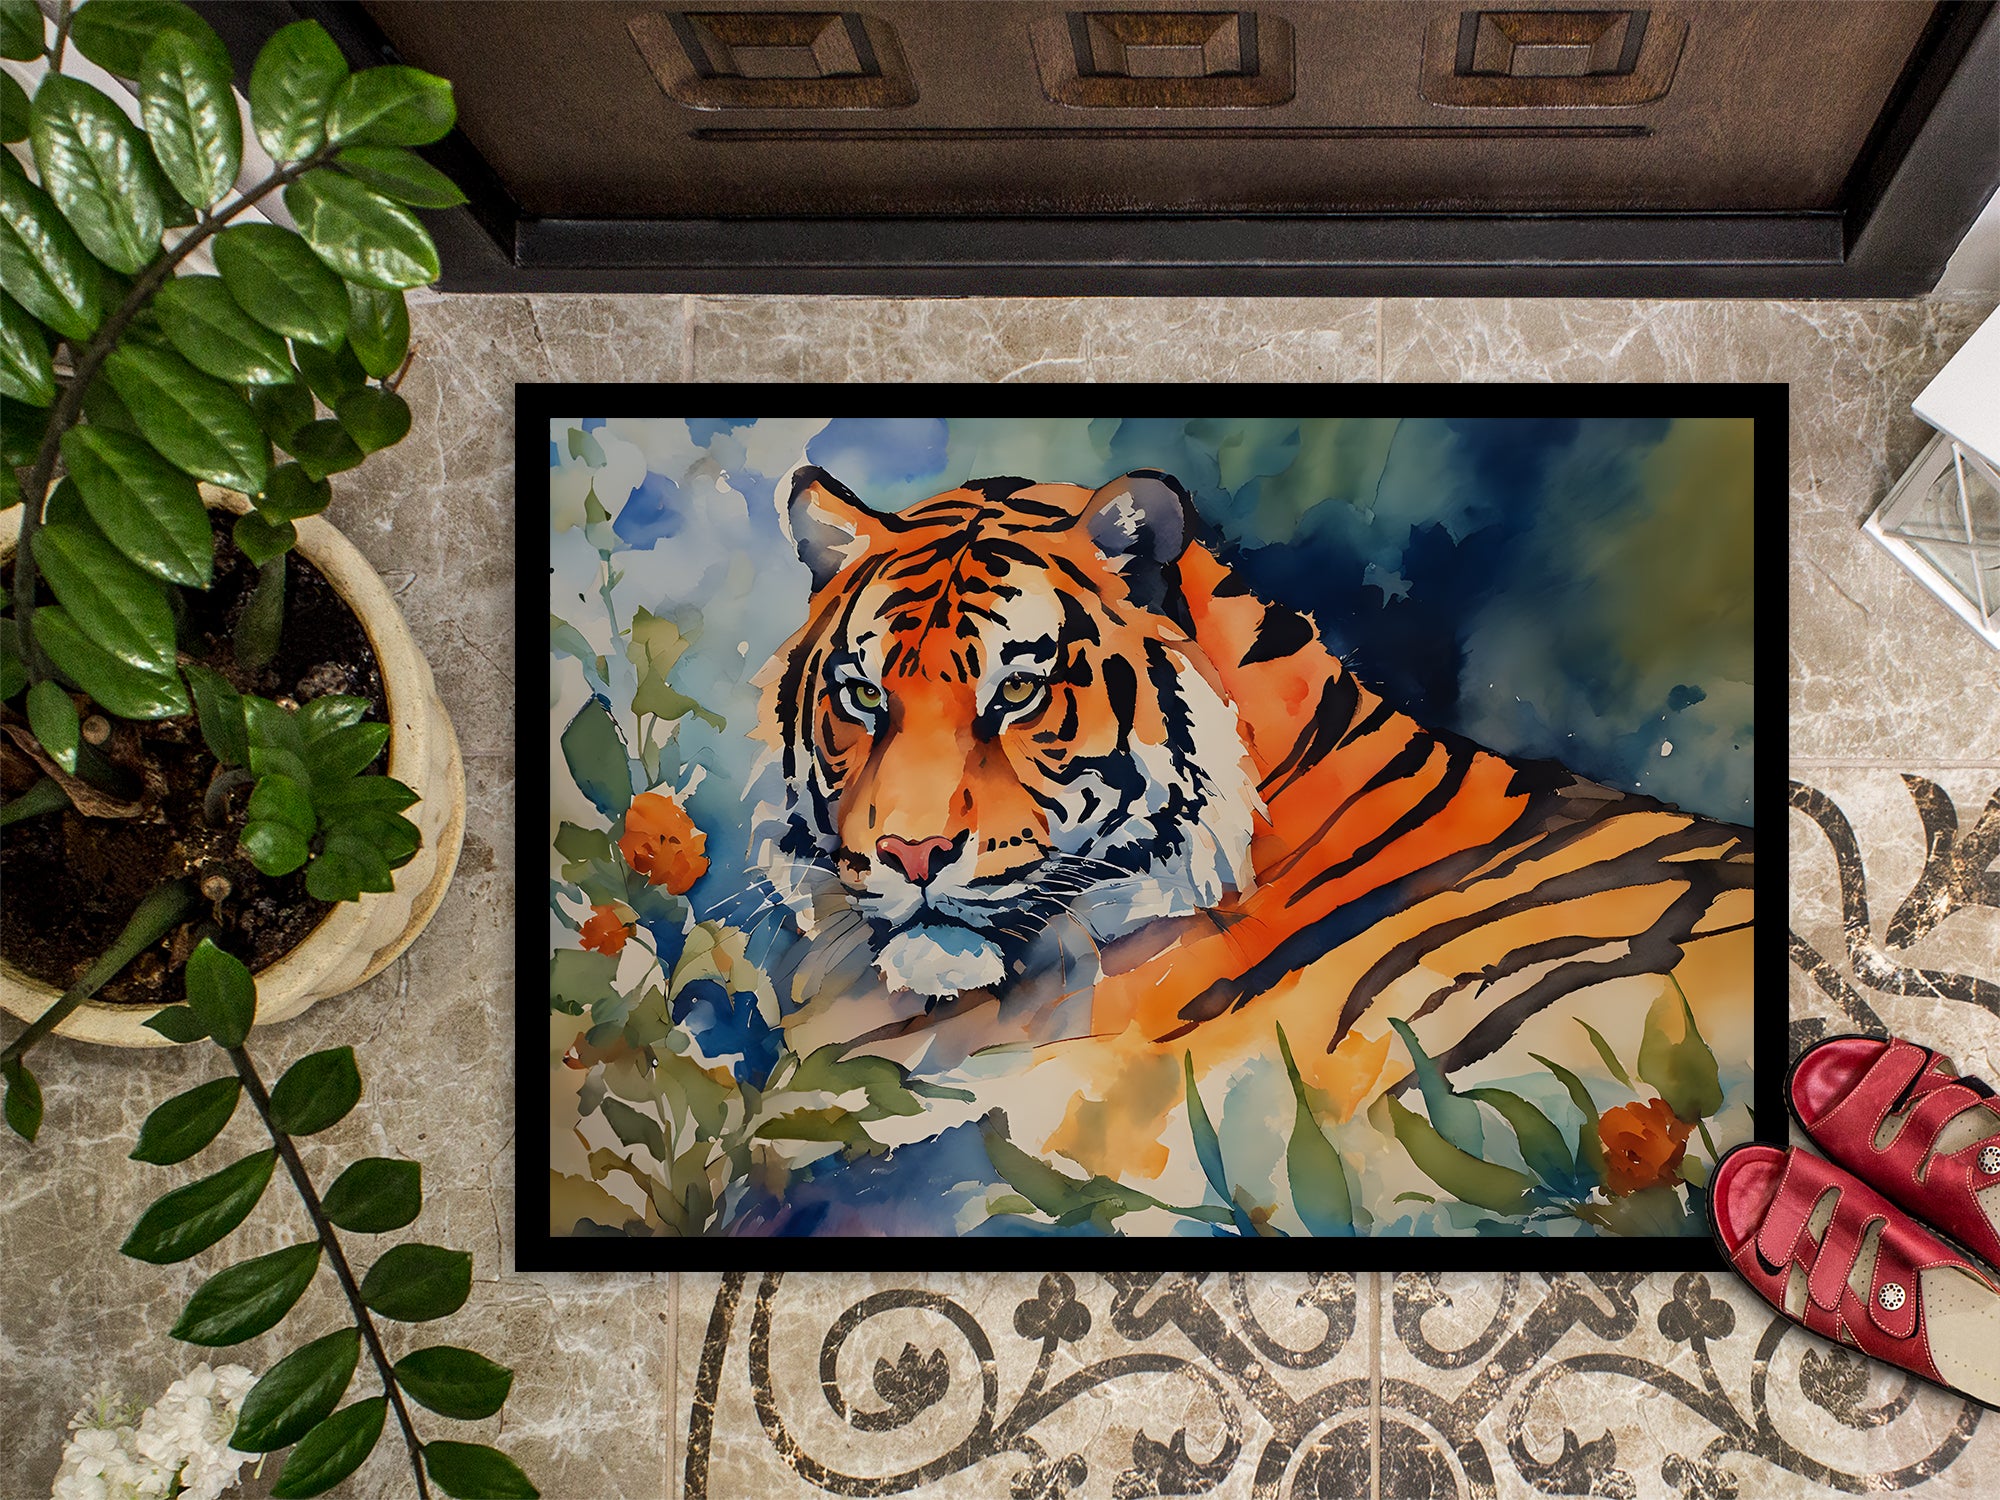 Tiger Doormat